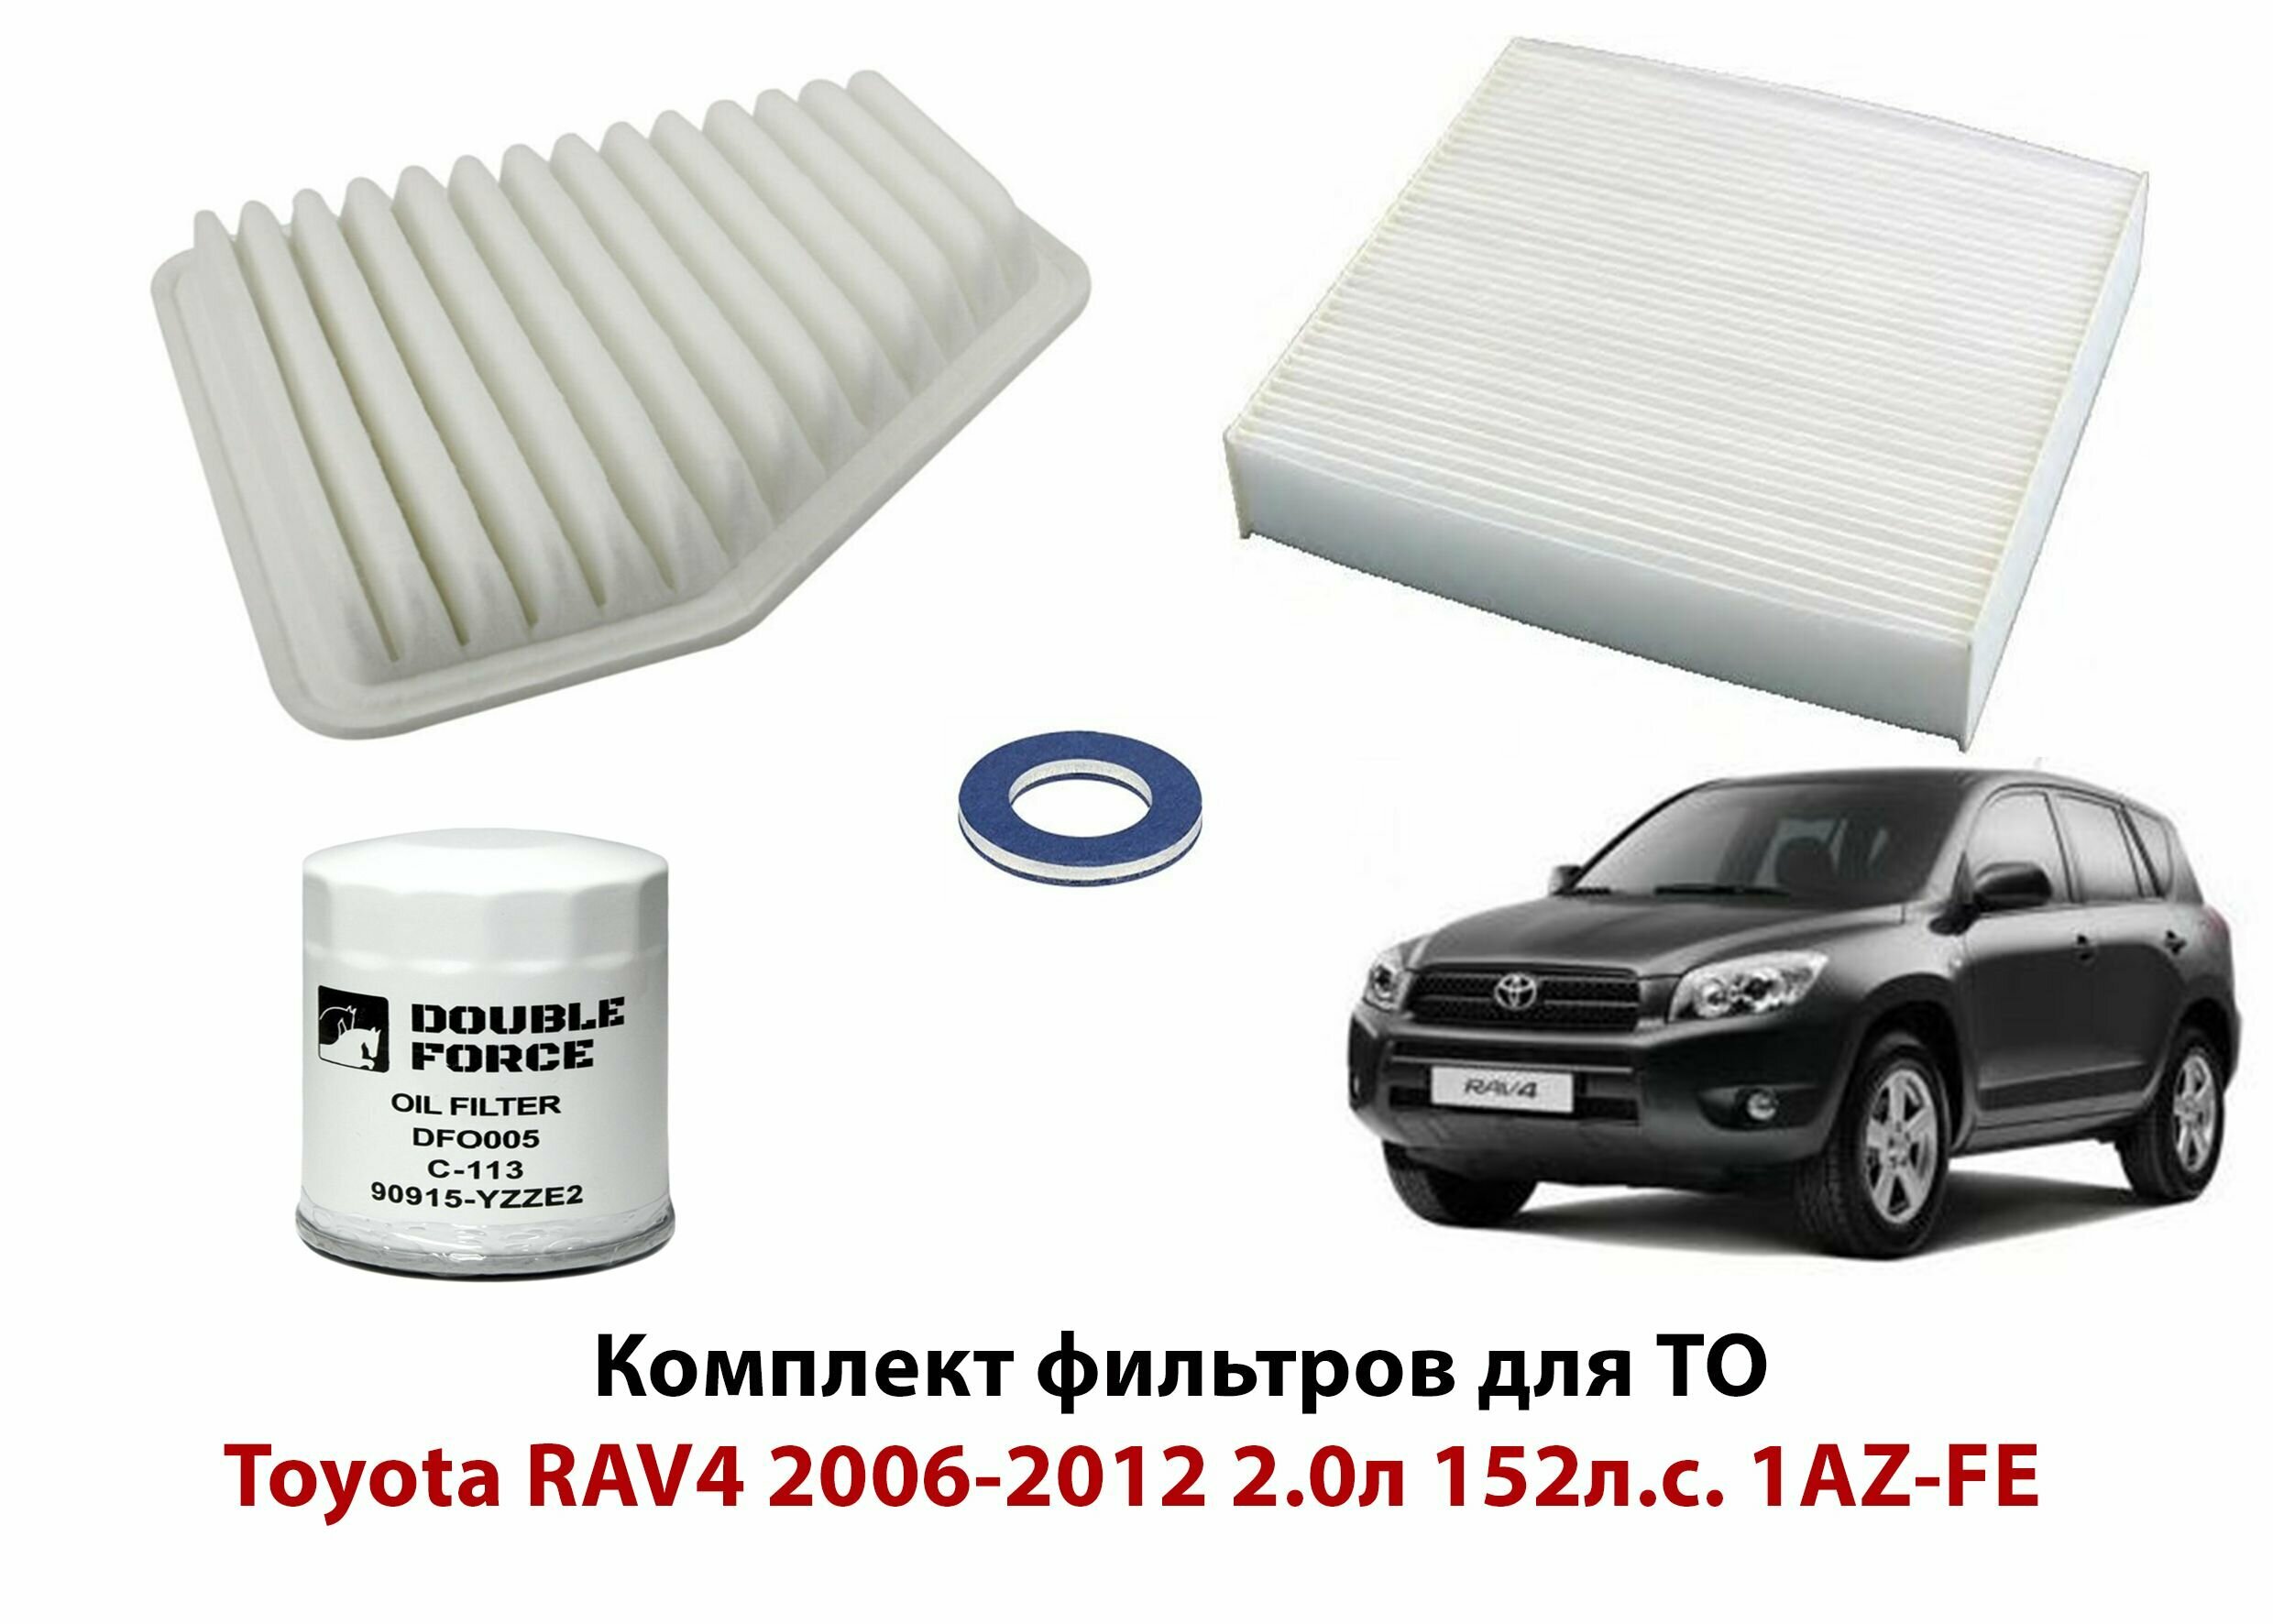 Комплект фильтров для ТО RAV4 A30 2005-2012/Набор для то тойота рав 4